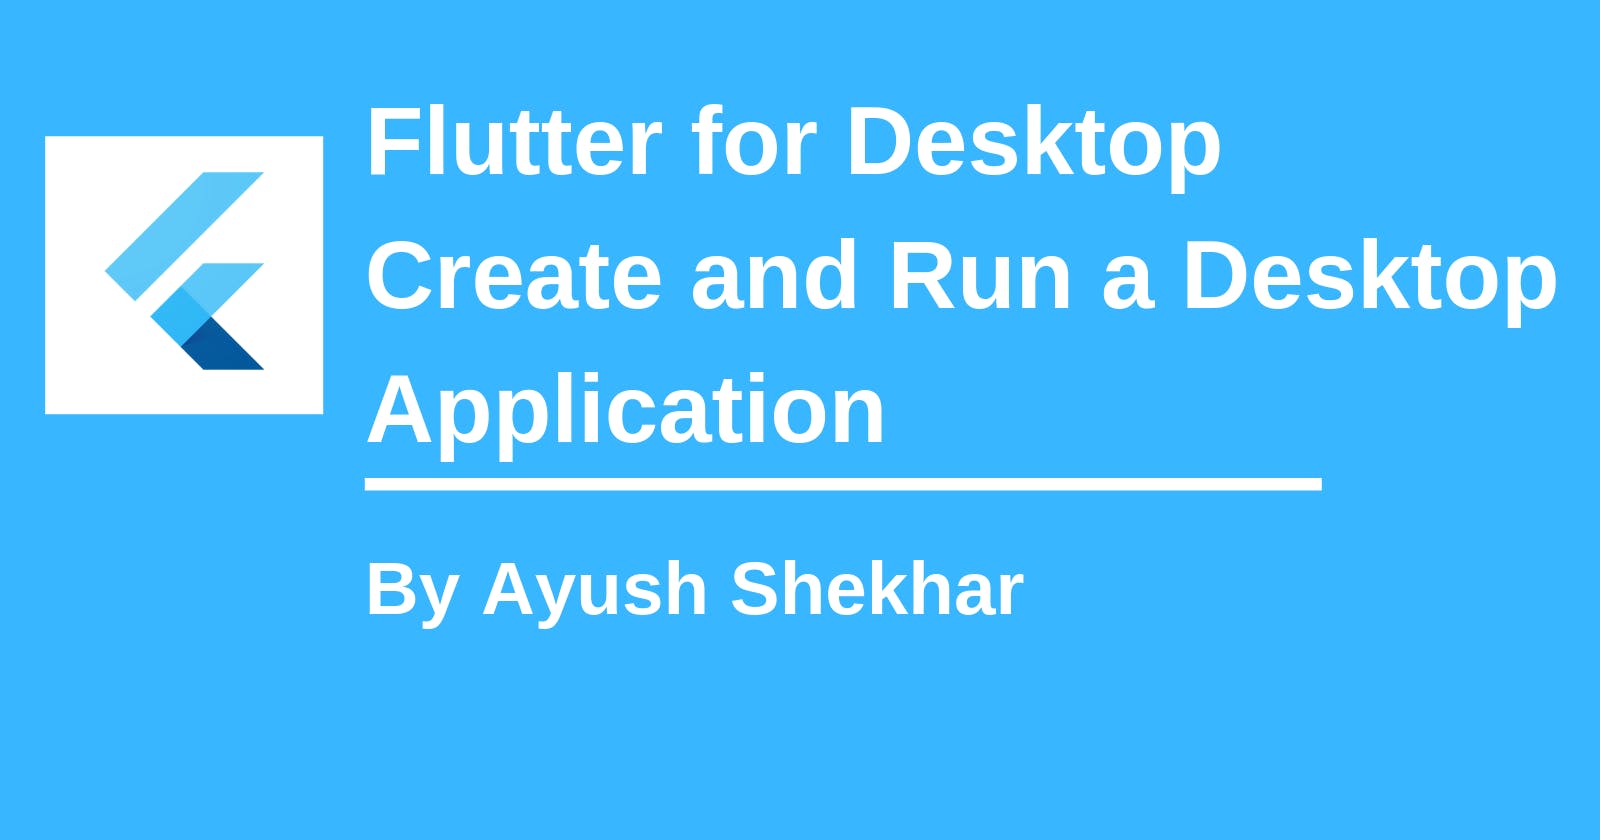 Flutter for Desktop: Create and Run a Desktop Application